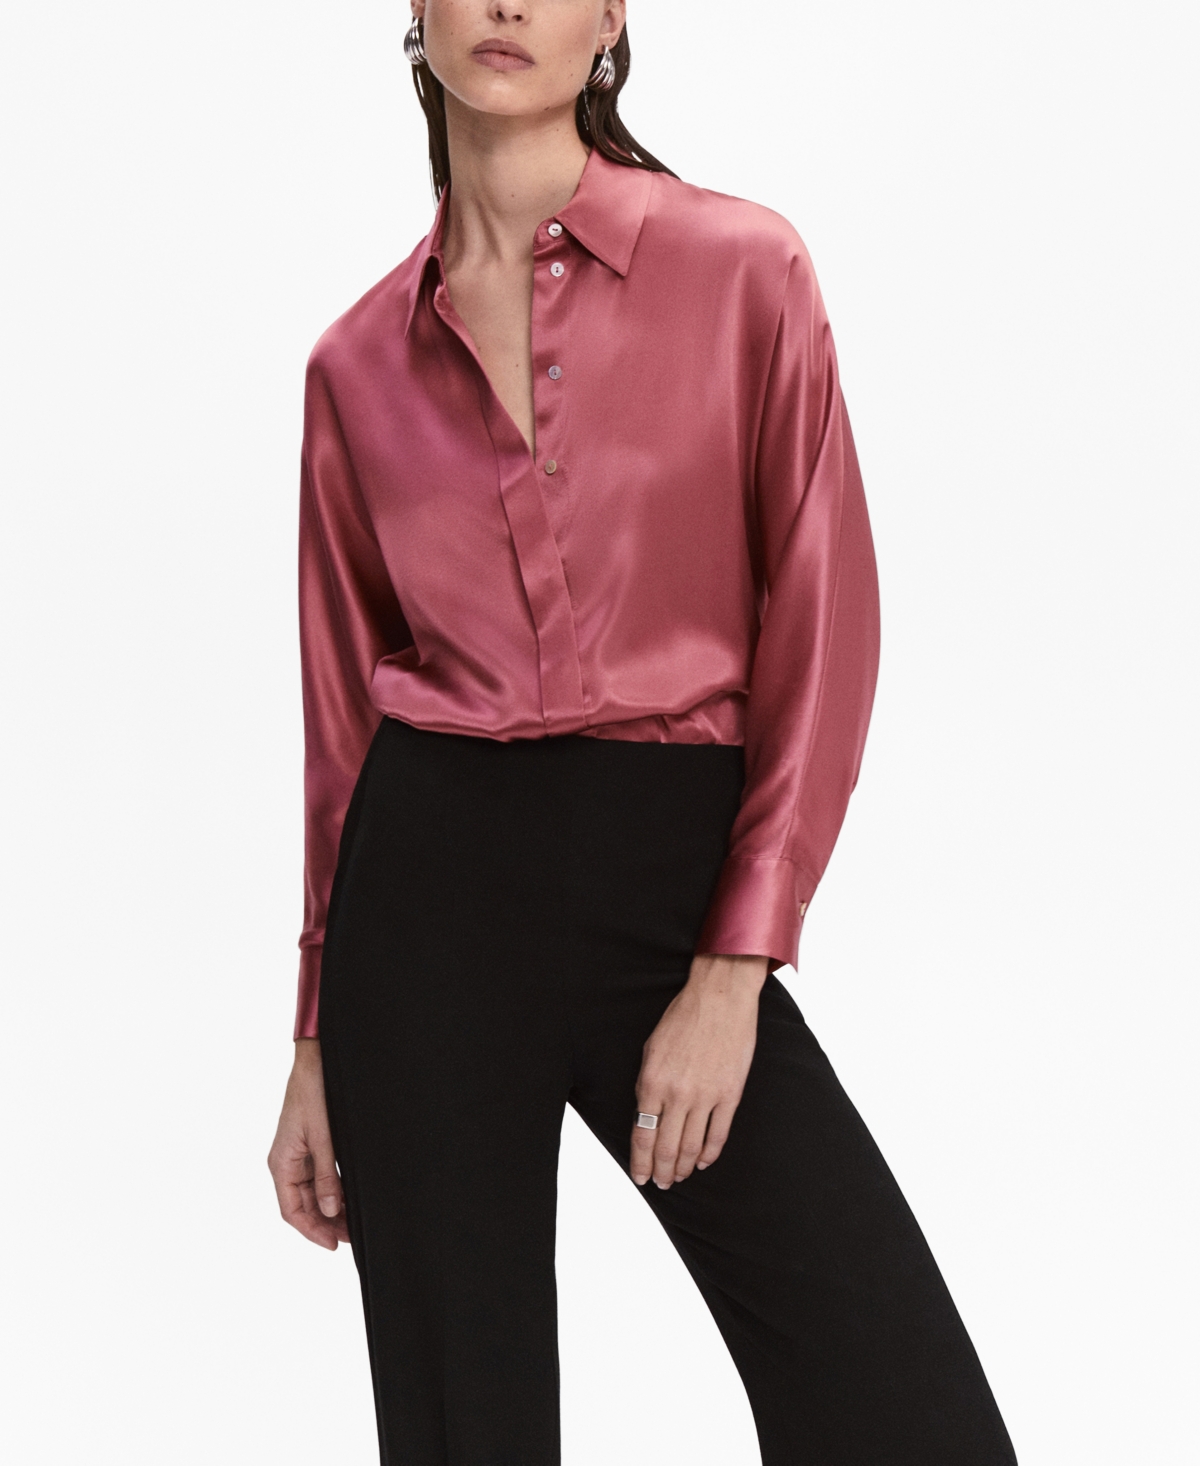 Zara - Geometric Print Satin Effect Shirt - Ecru Black - Women